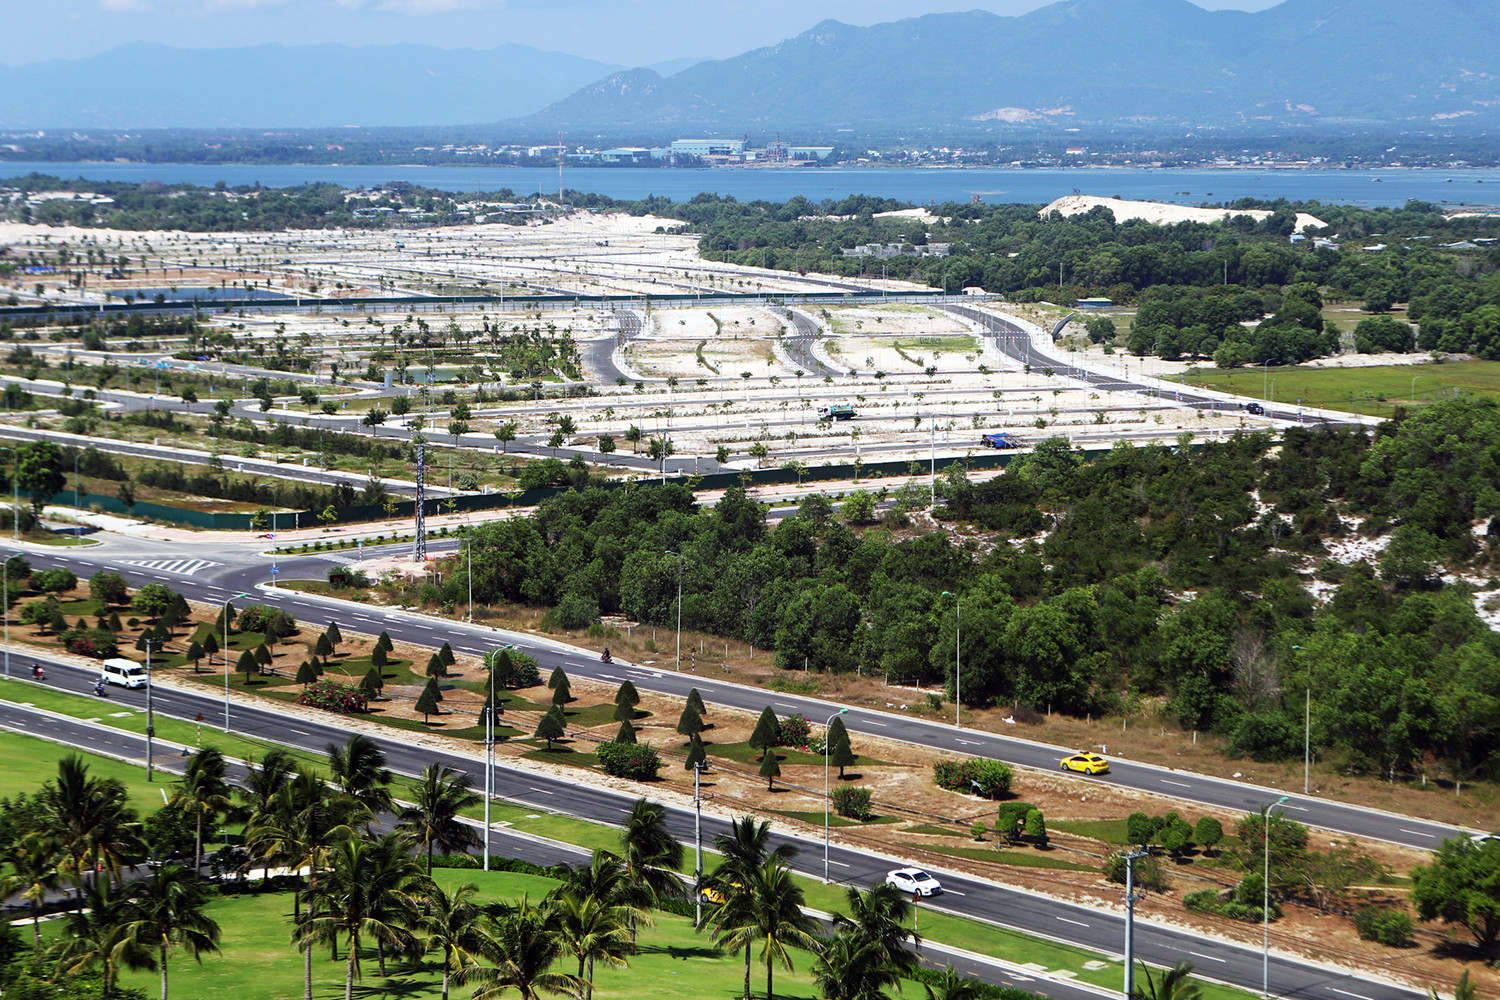 Quy hoạch Cam Lâm thành đô thị sân bay tầm cỡ quốc tế